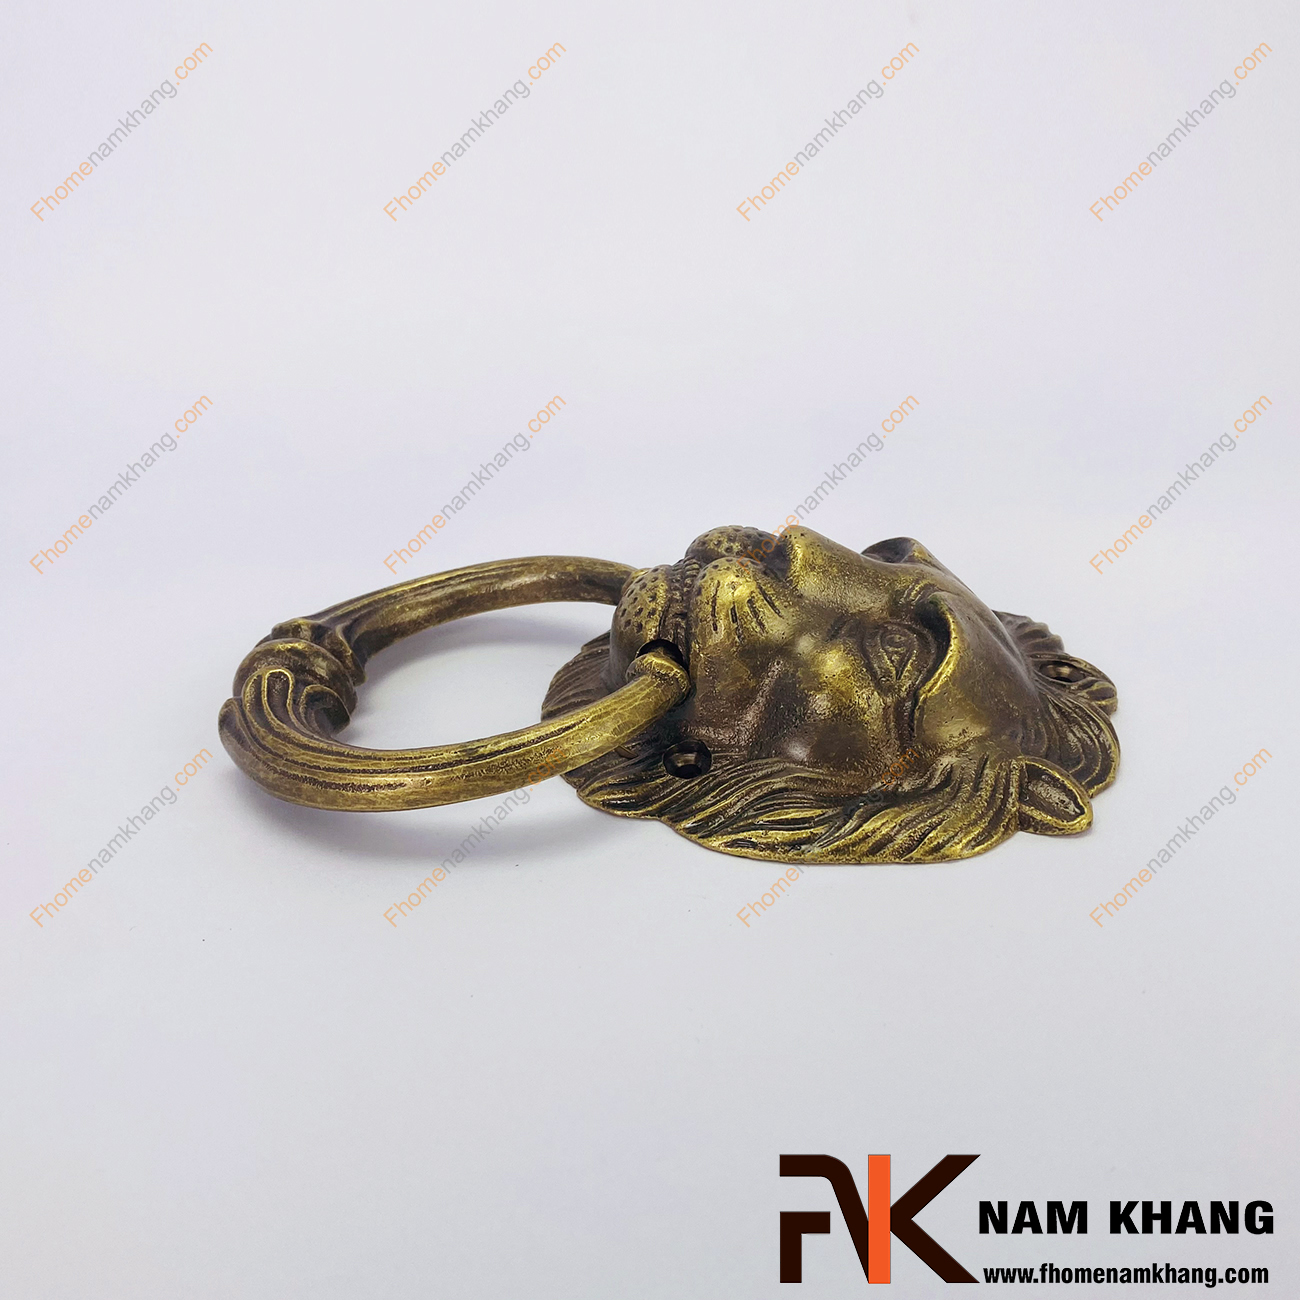 Núm đồng đầu sư tử NKD096 là một sản phẩm nội thất được chế tạo lấy cảm hứng từ sự uy quyền của loài sư tử dũng mãnh.